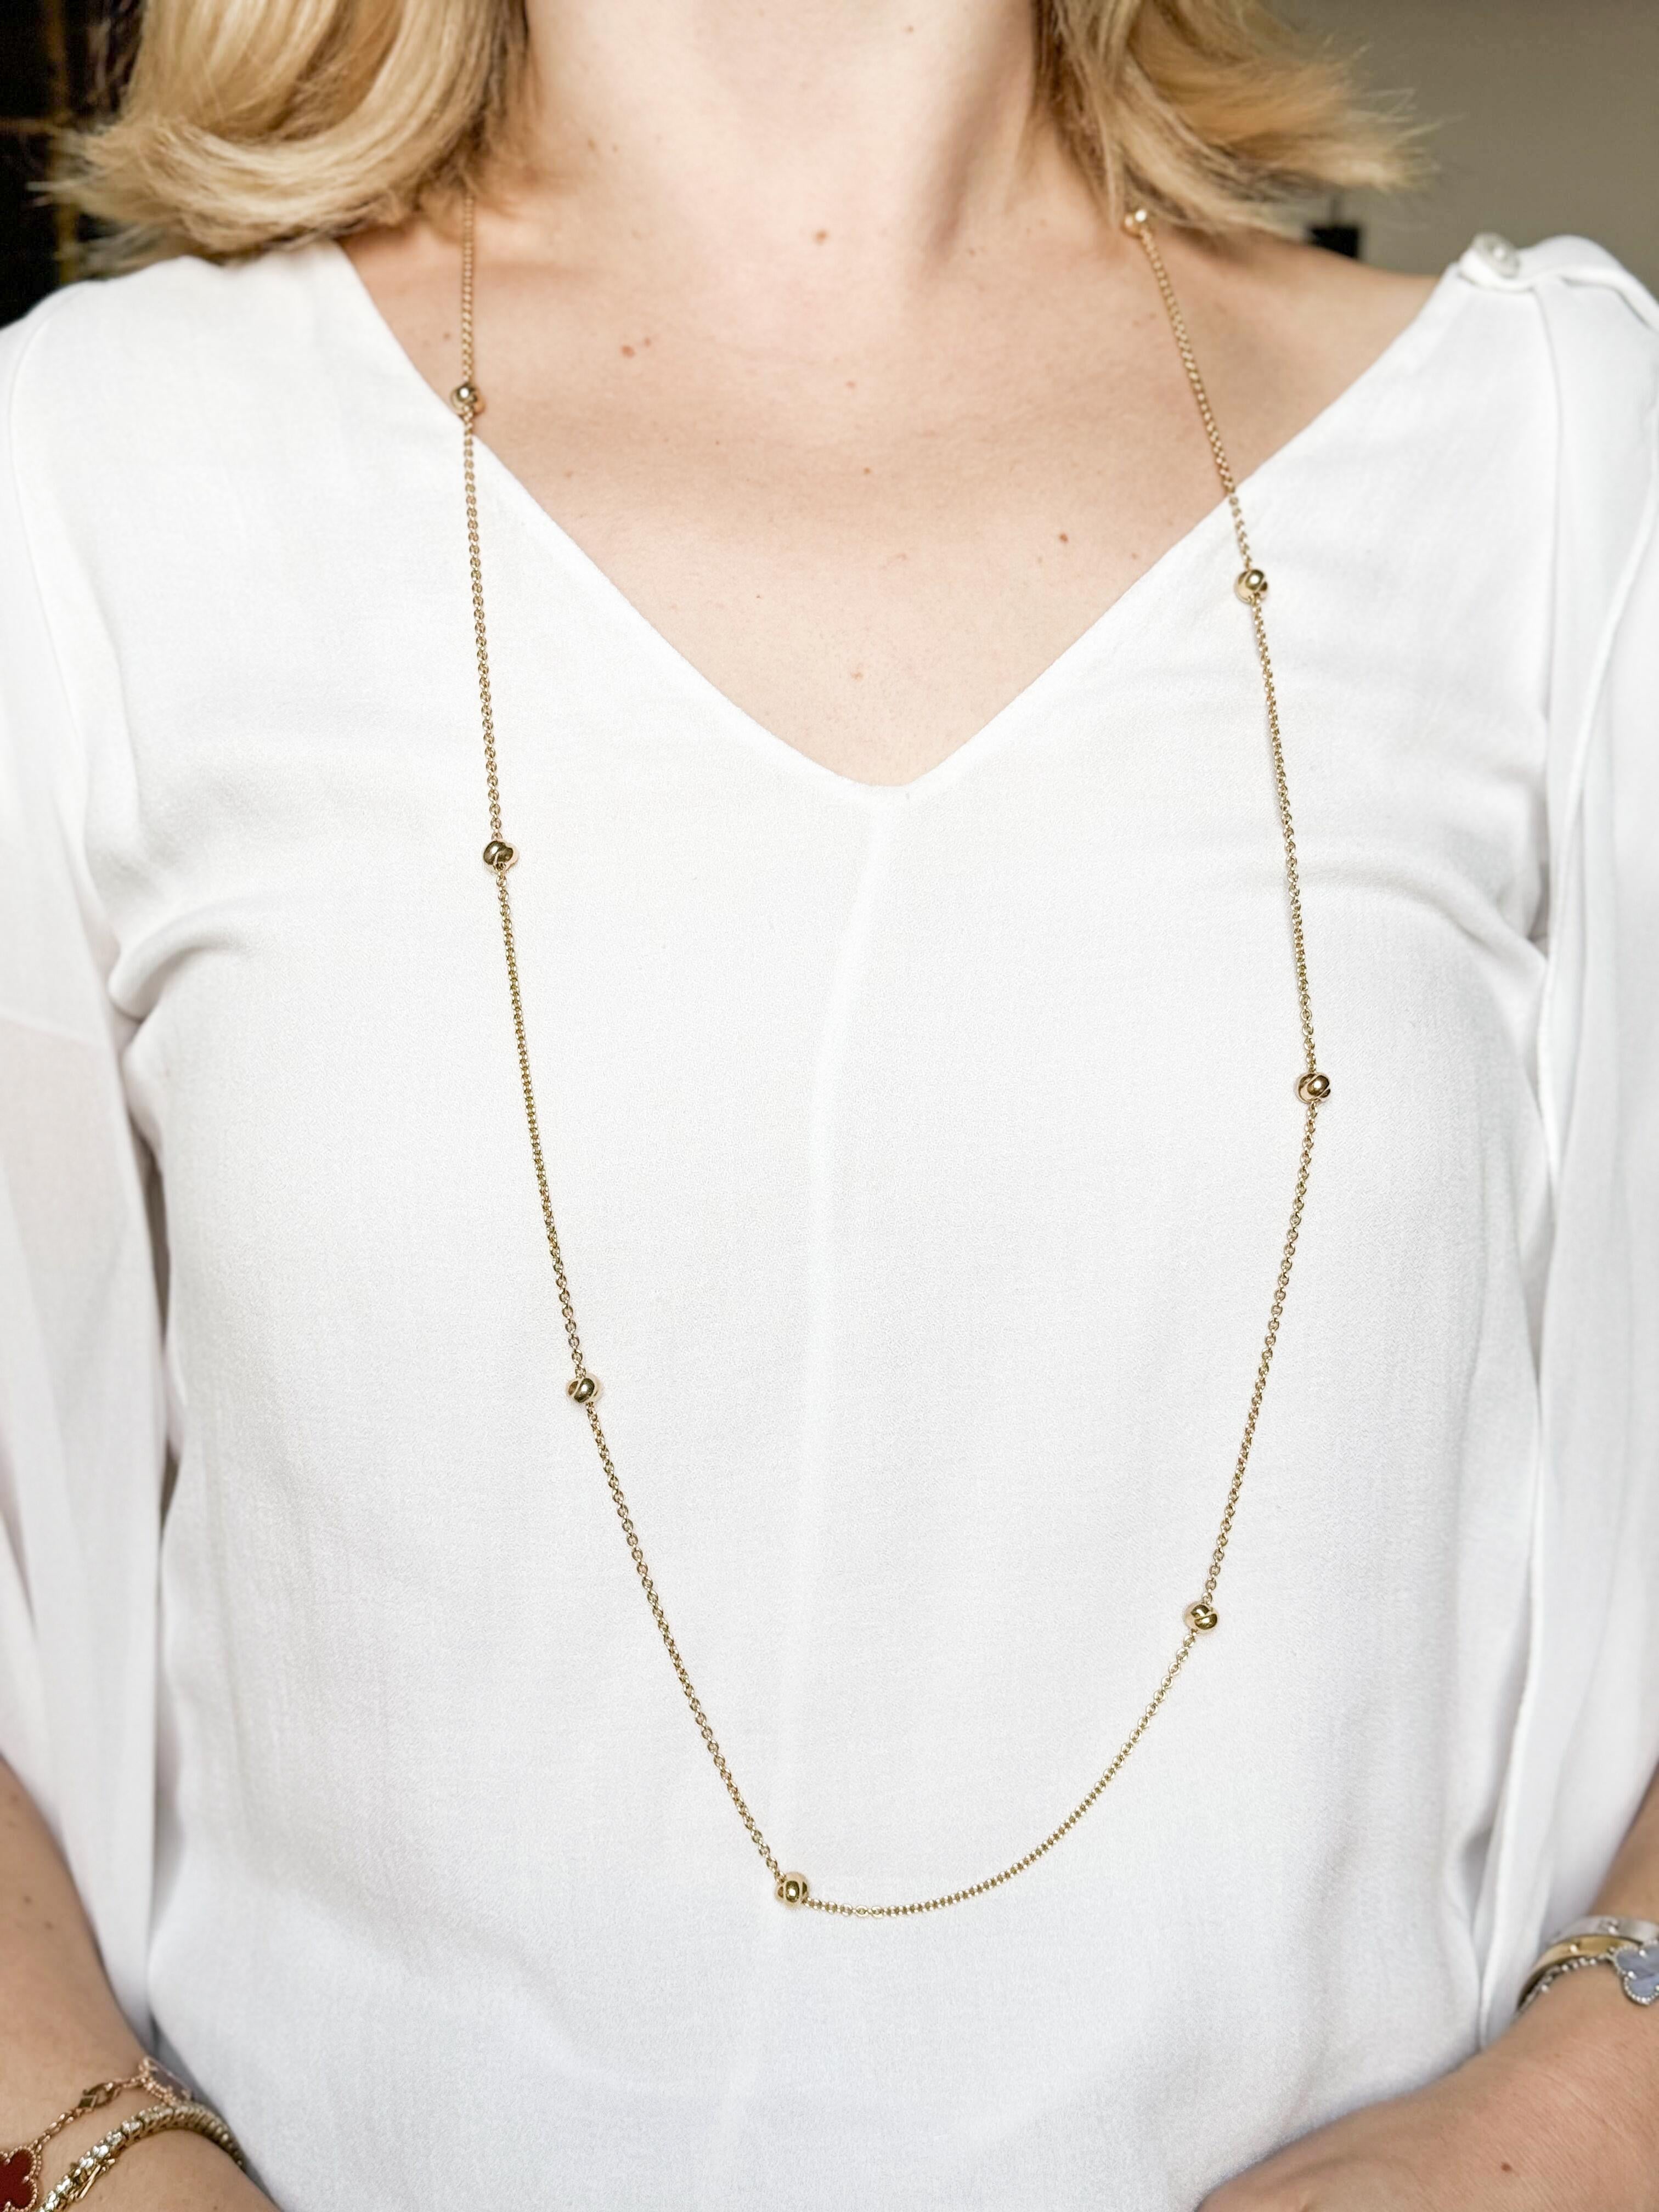 Long collier en or 18k de Cartier, présentant 9 stations de nœuds de la Trinité. Le collier fait 41,5